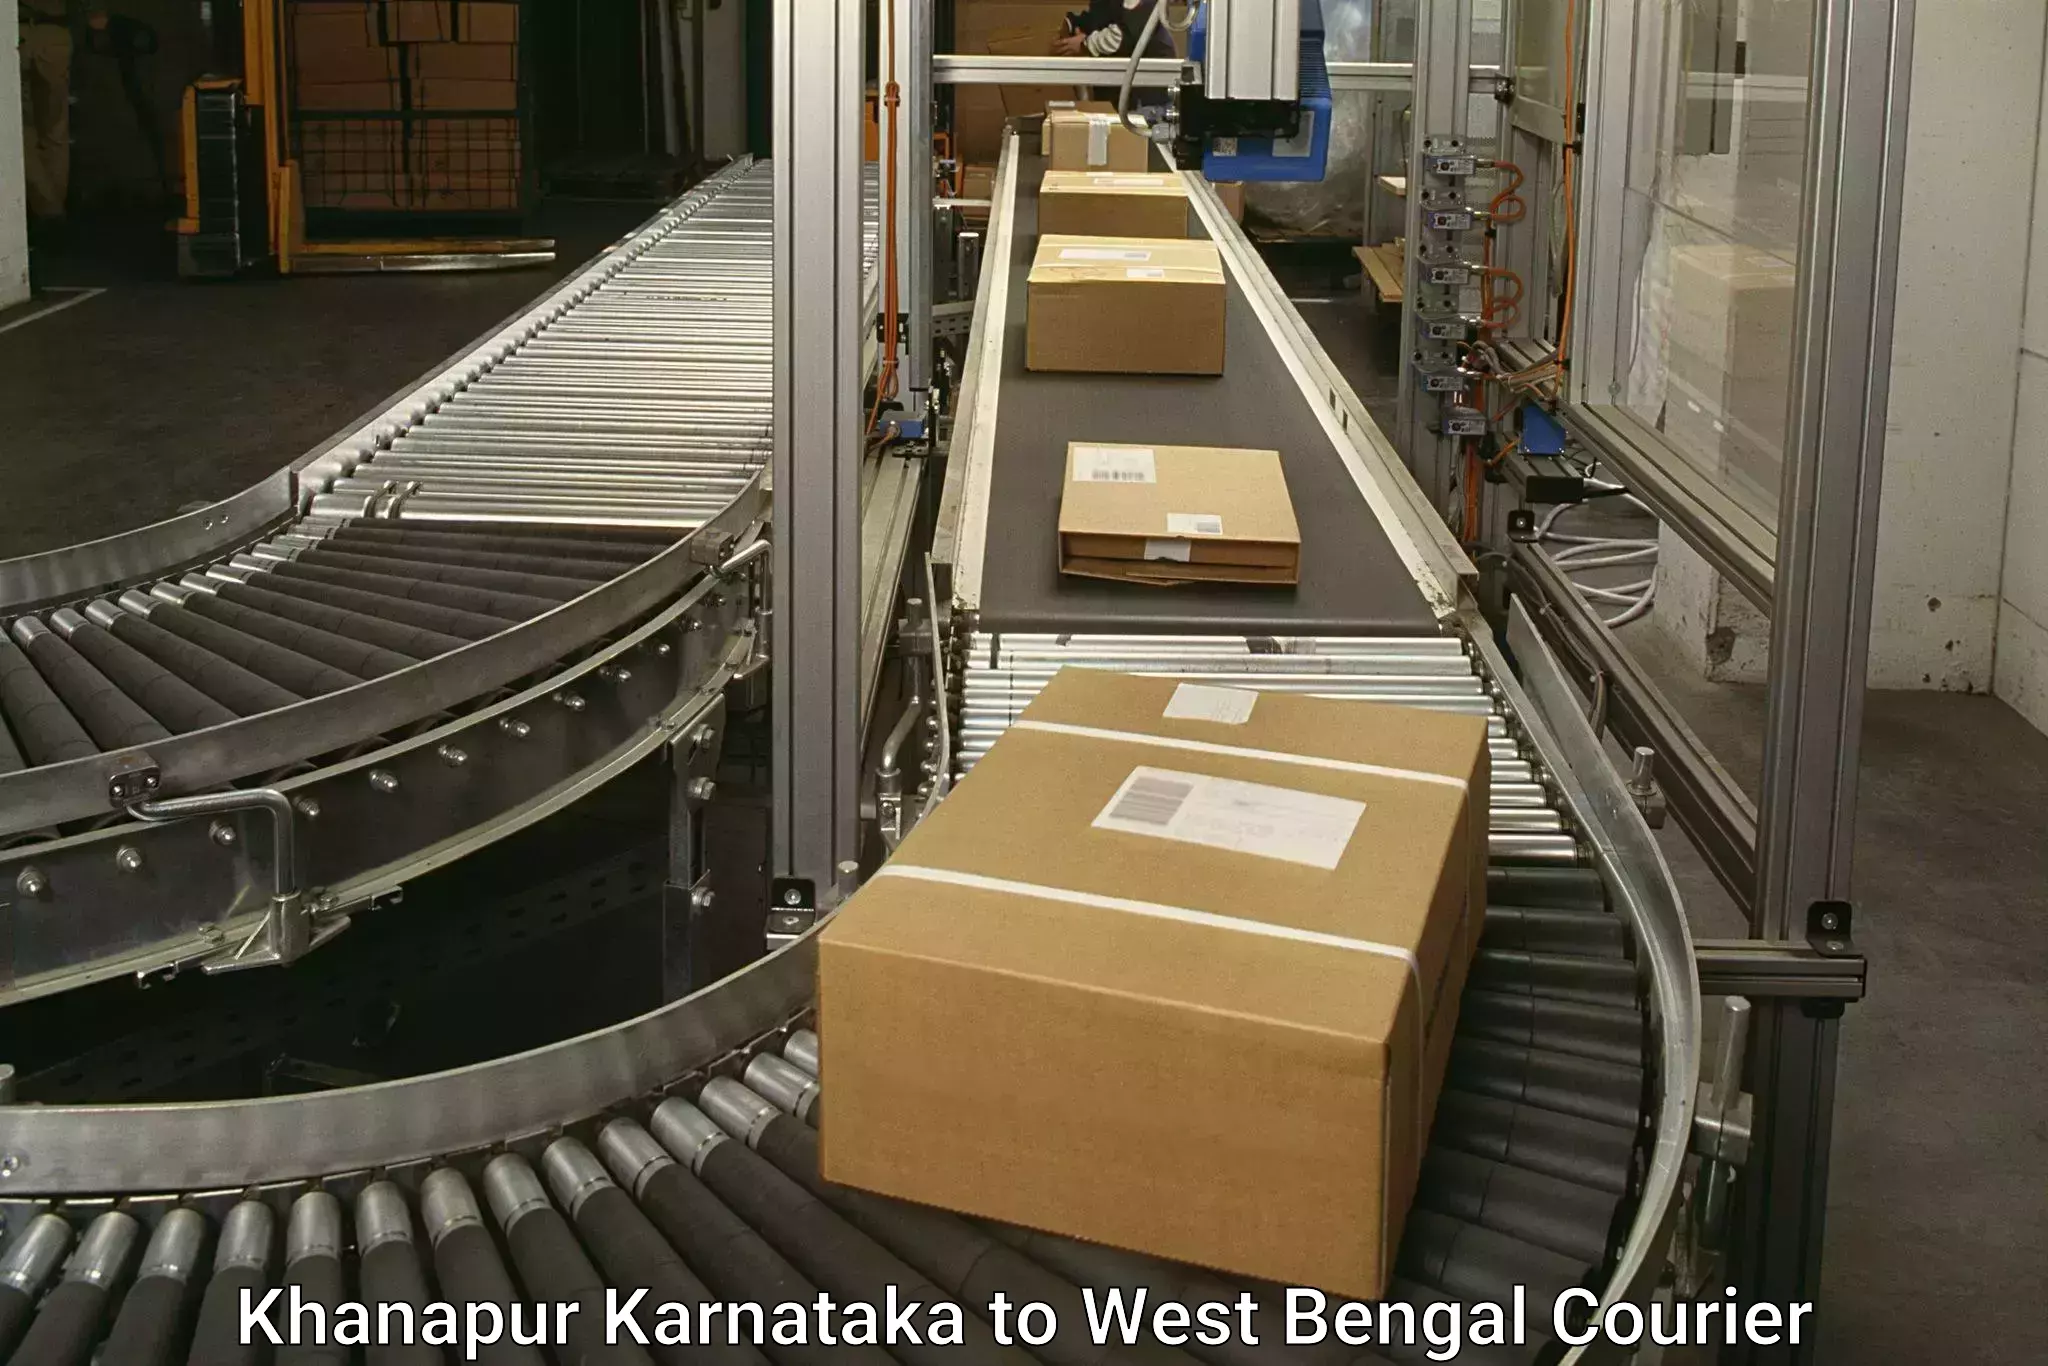 Dynamic courier services Khanapur Karnataka to Kolkata Port